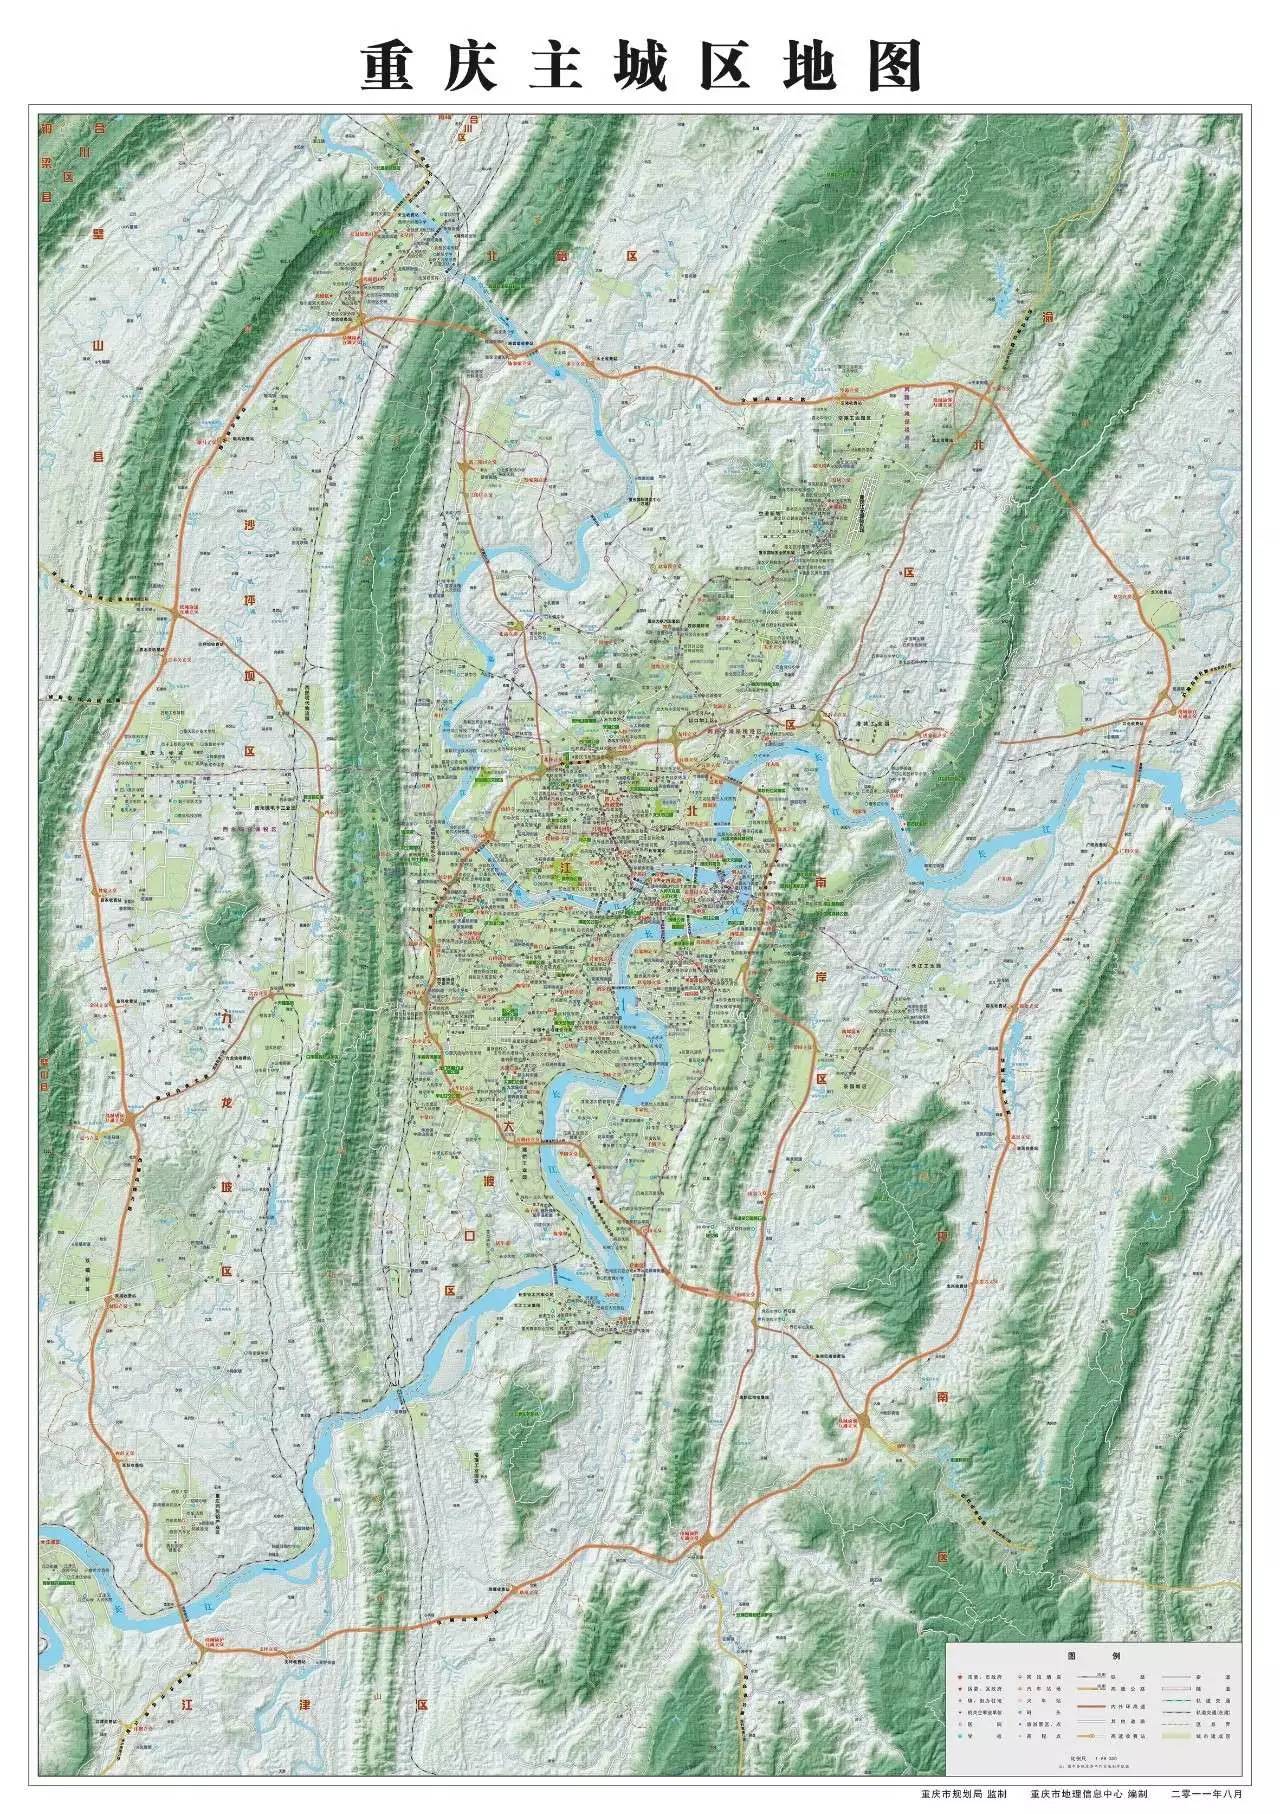 一张全新的重庆城区地图